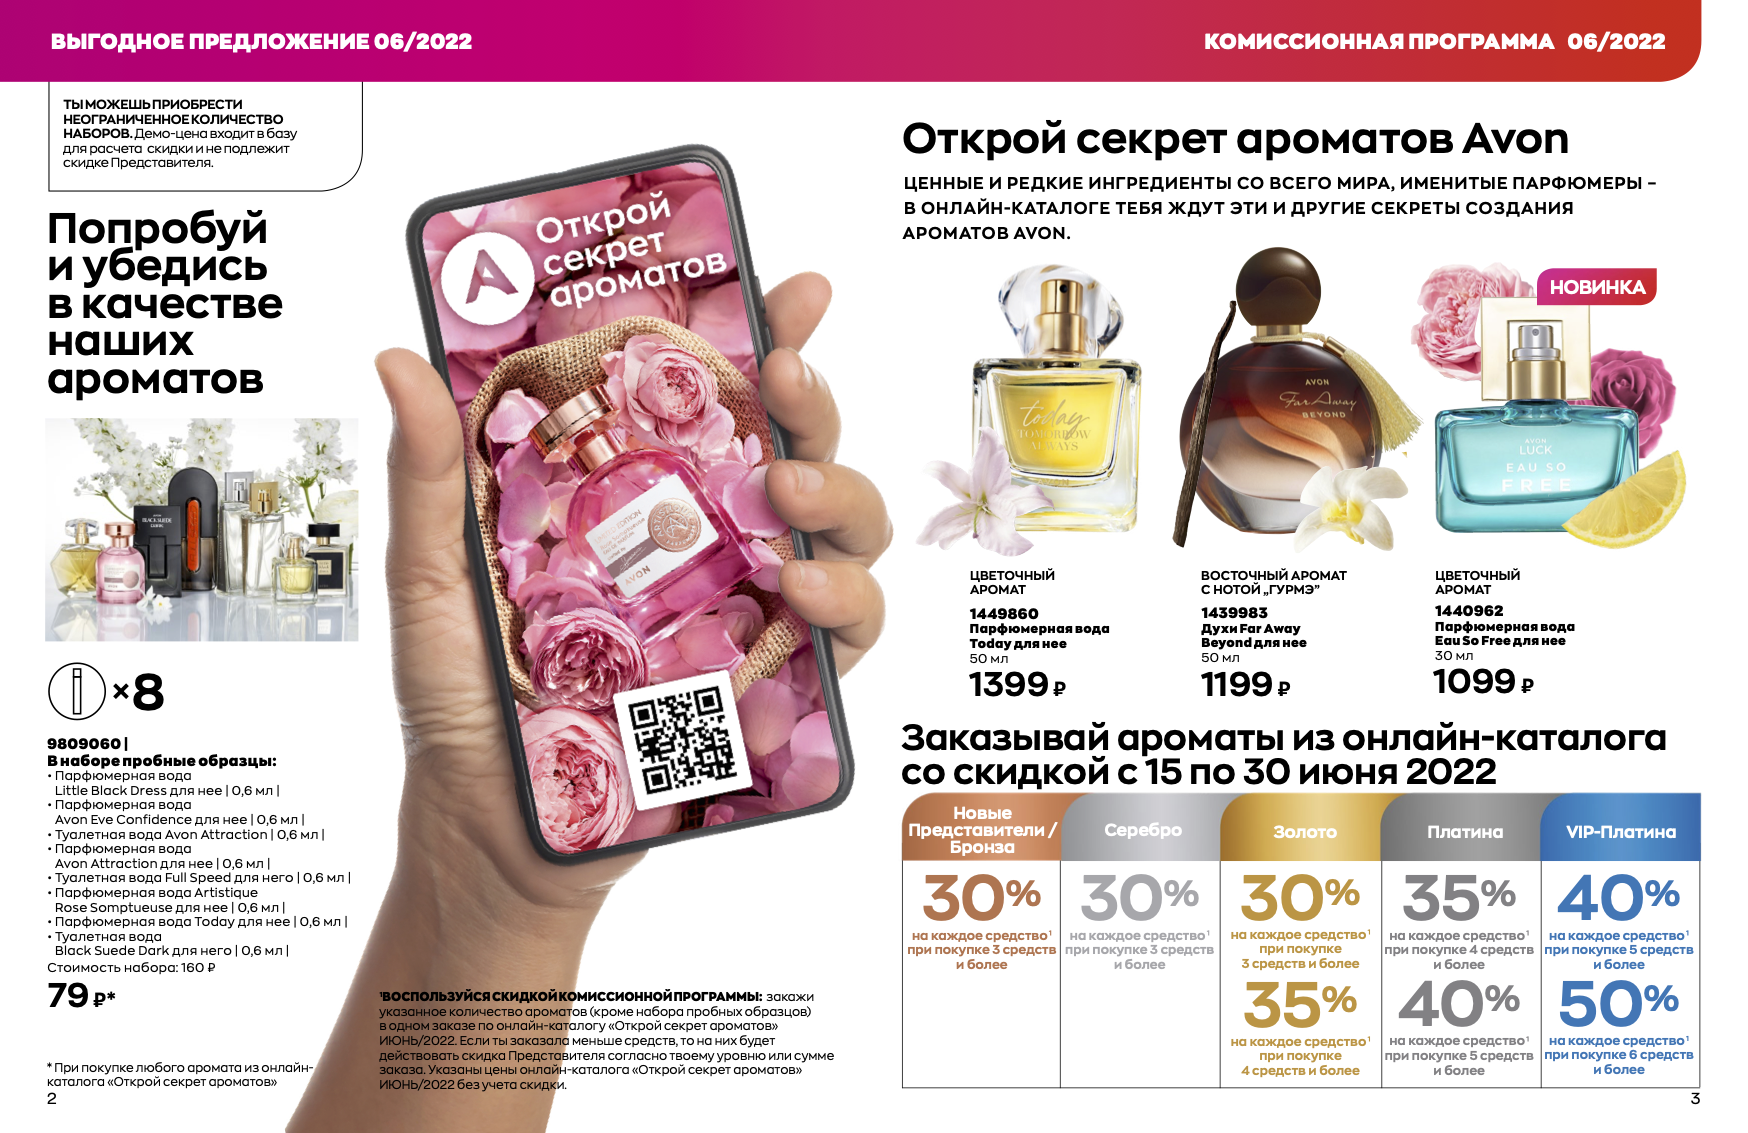 Комиссионная программа на онлайн брошюру секрет ароматов в июне 2022